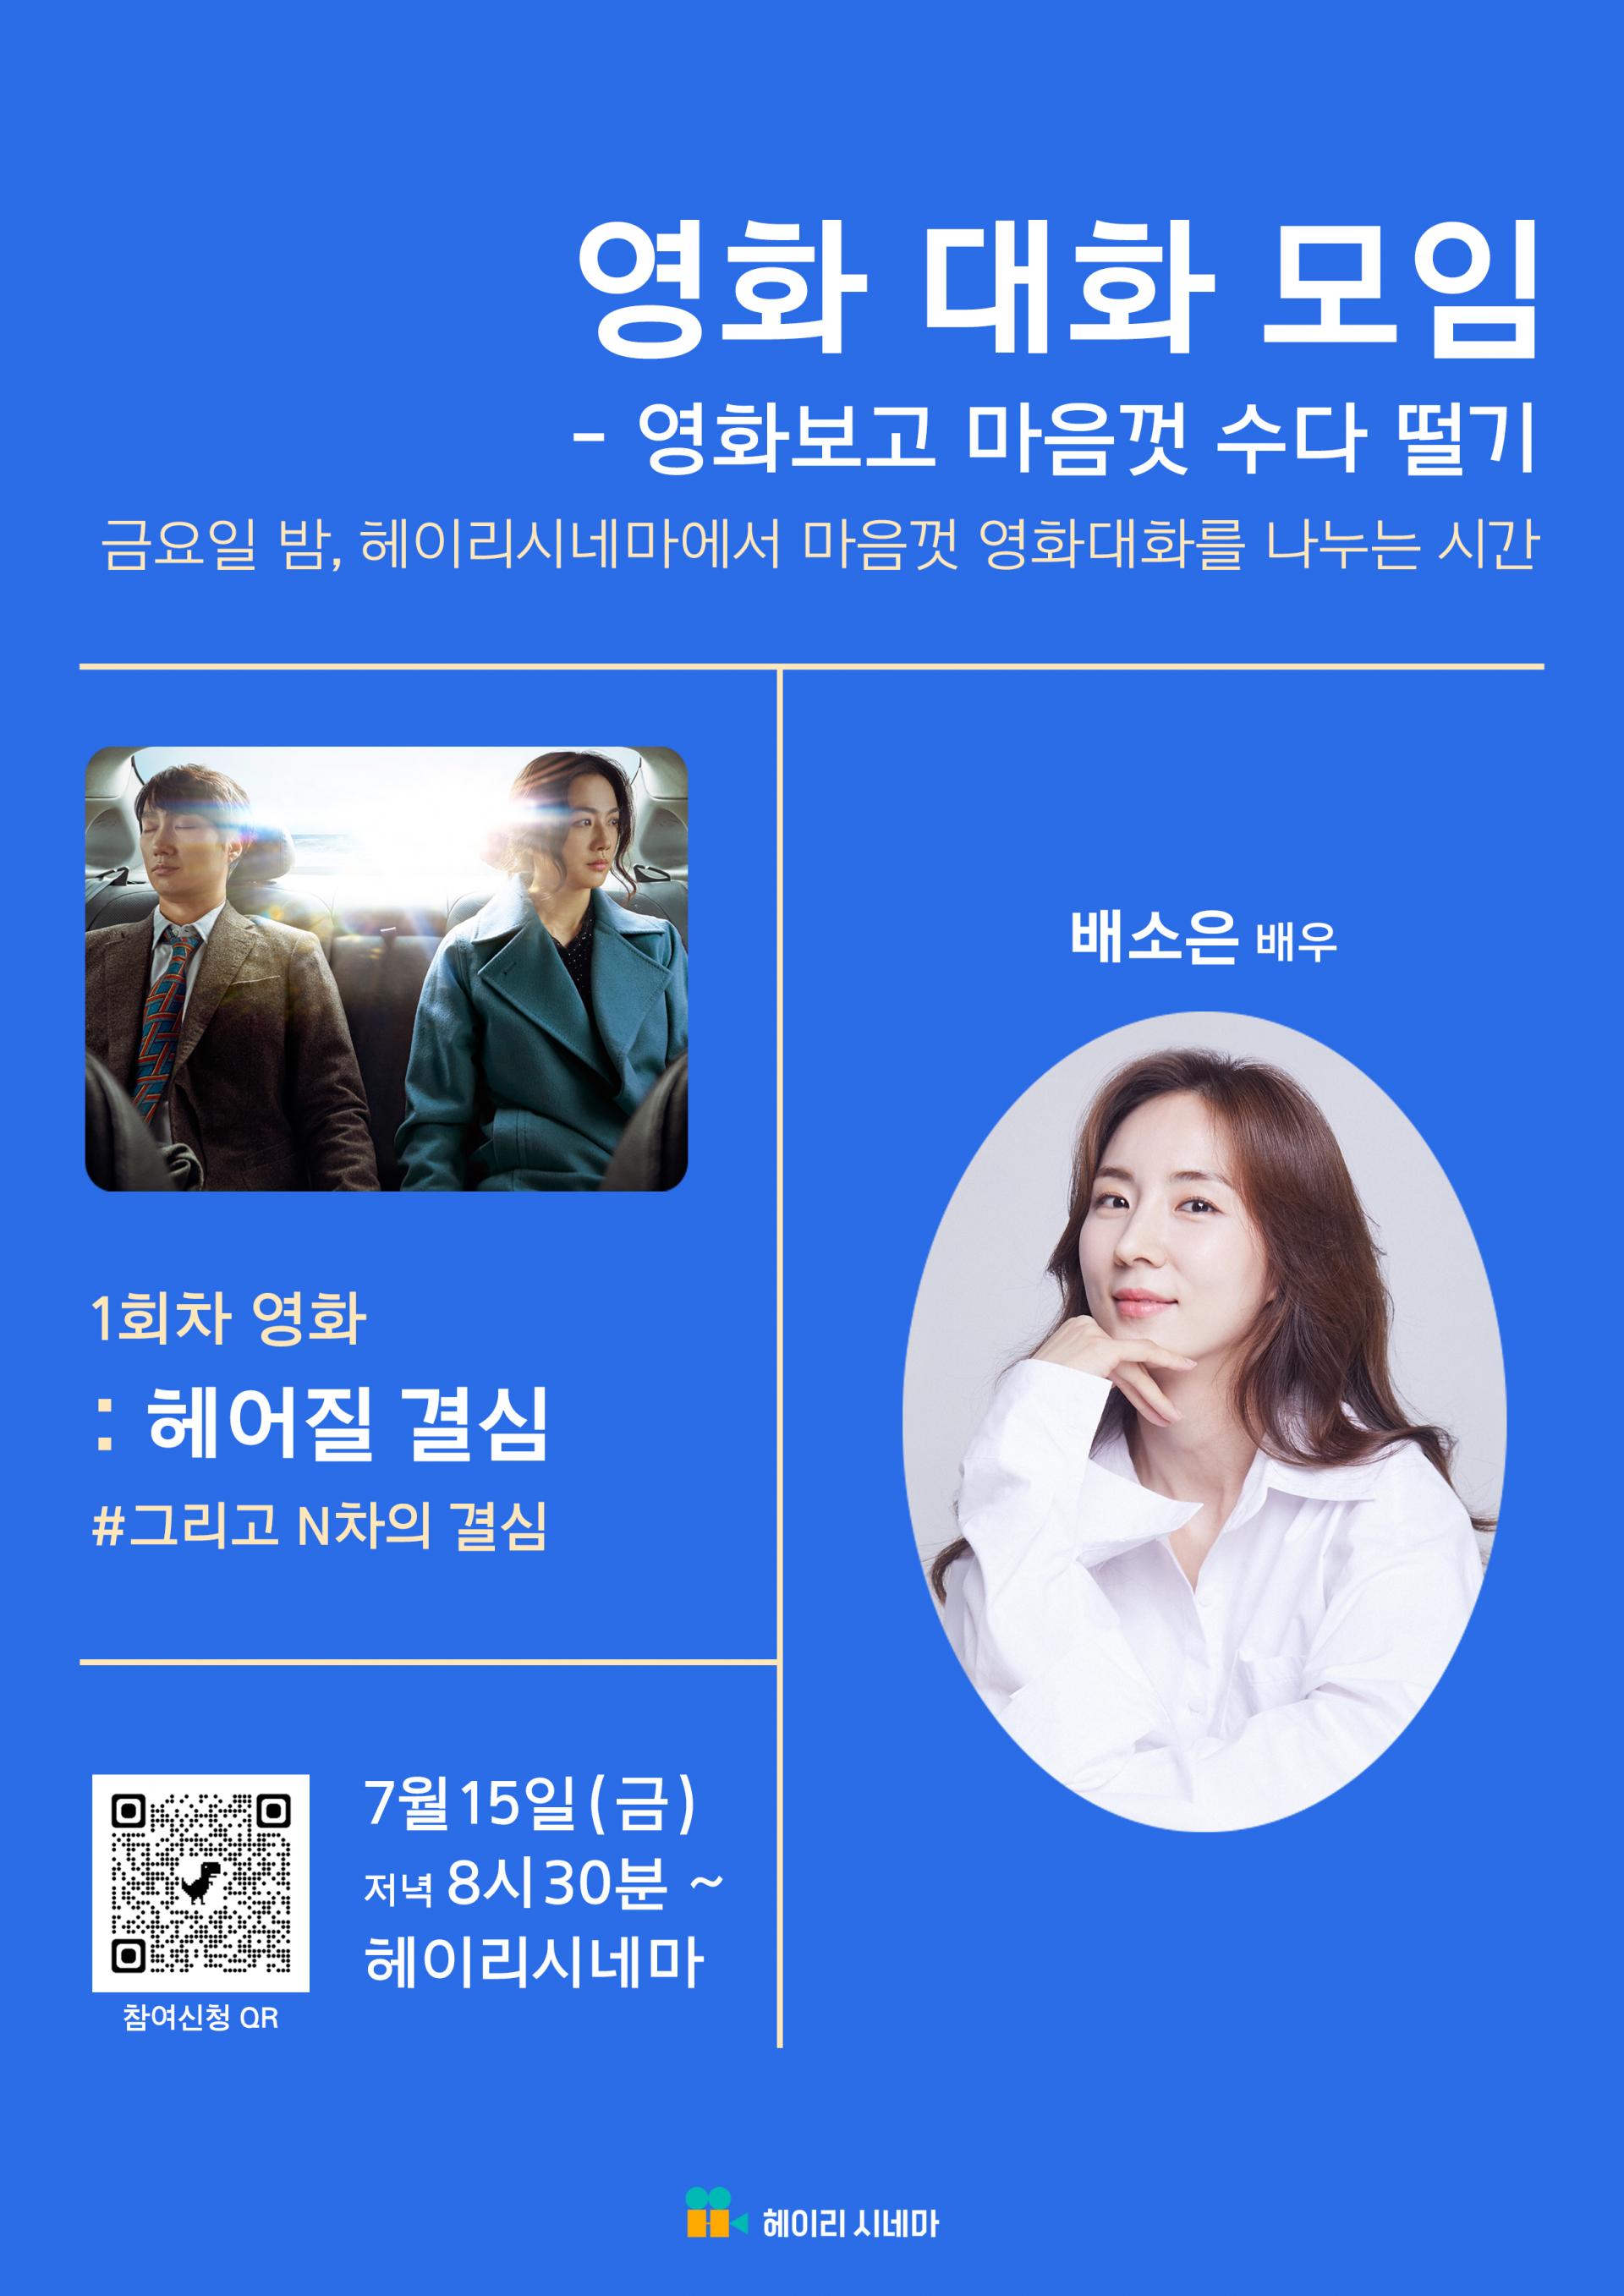 7/15 영화 대화 모임 - 1회차영화 : 헤어질 결심 in 헤이리 시네마 : 헤이리예술마을